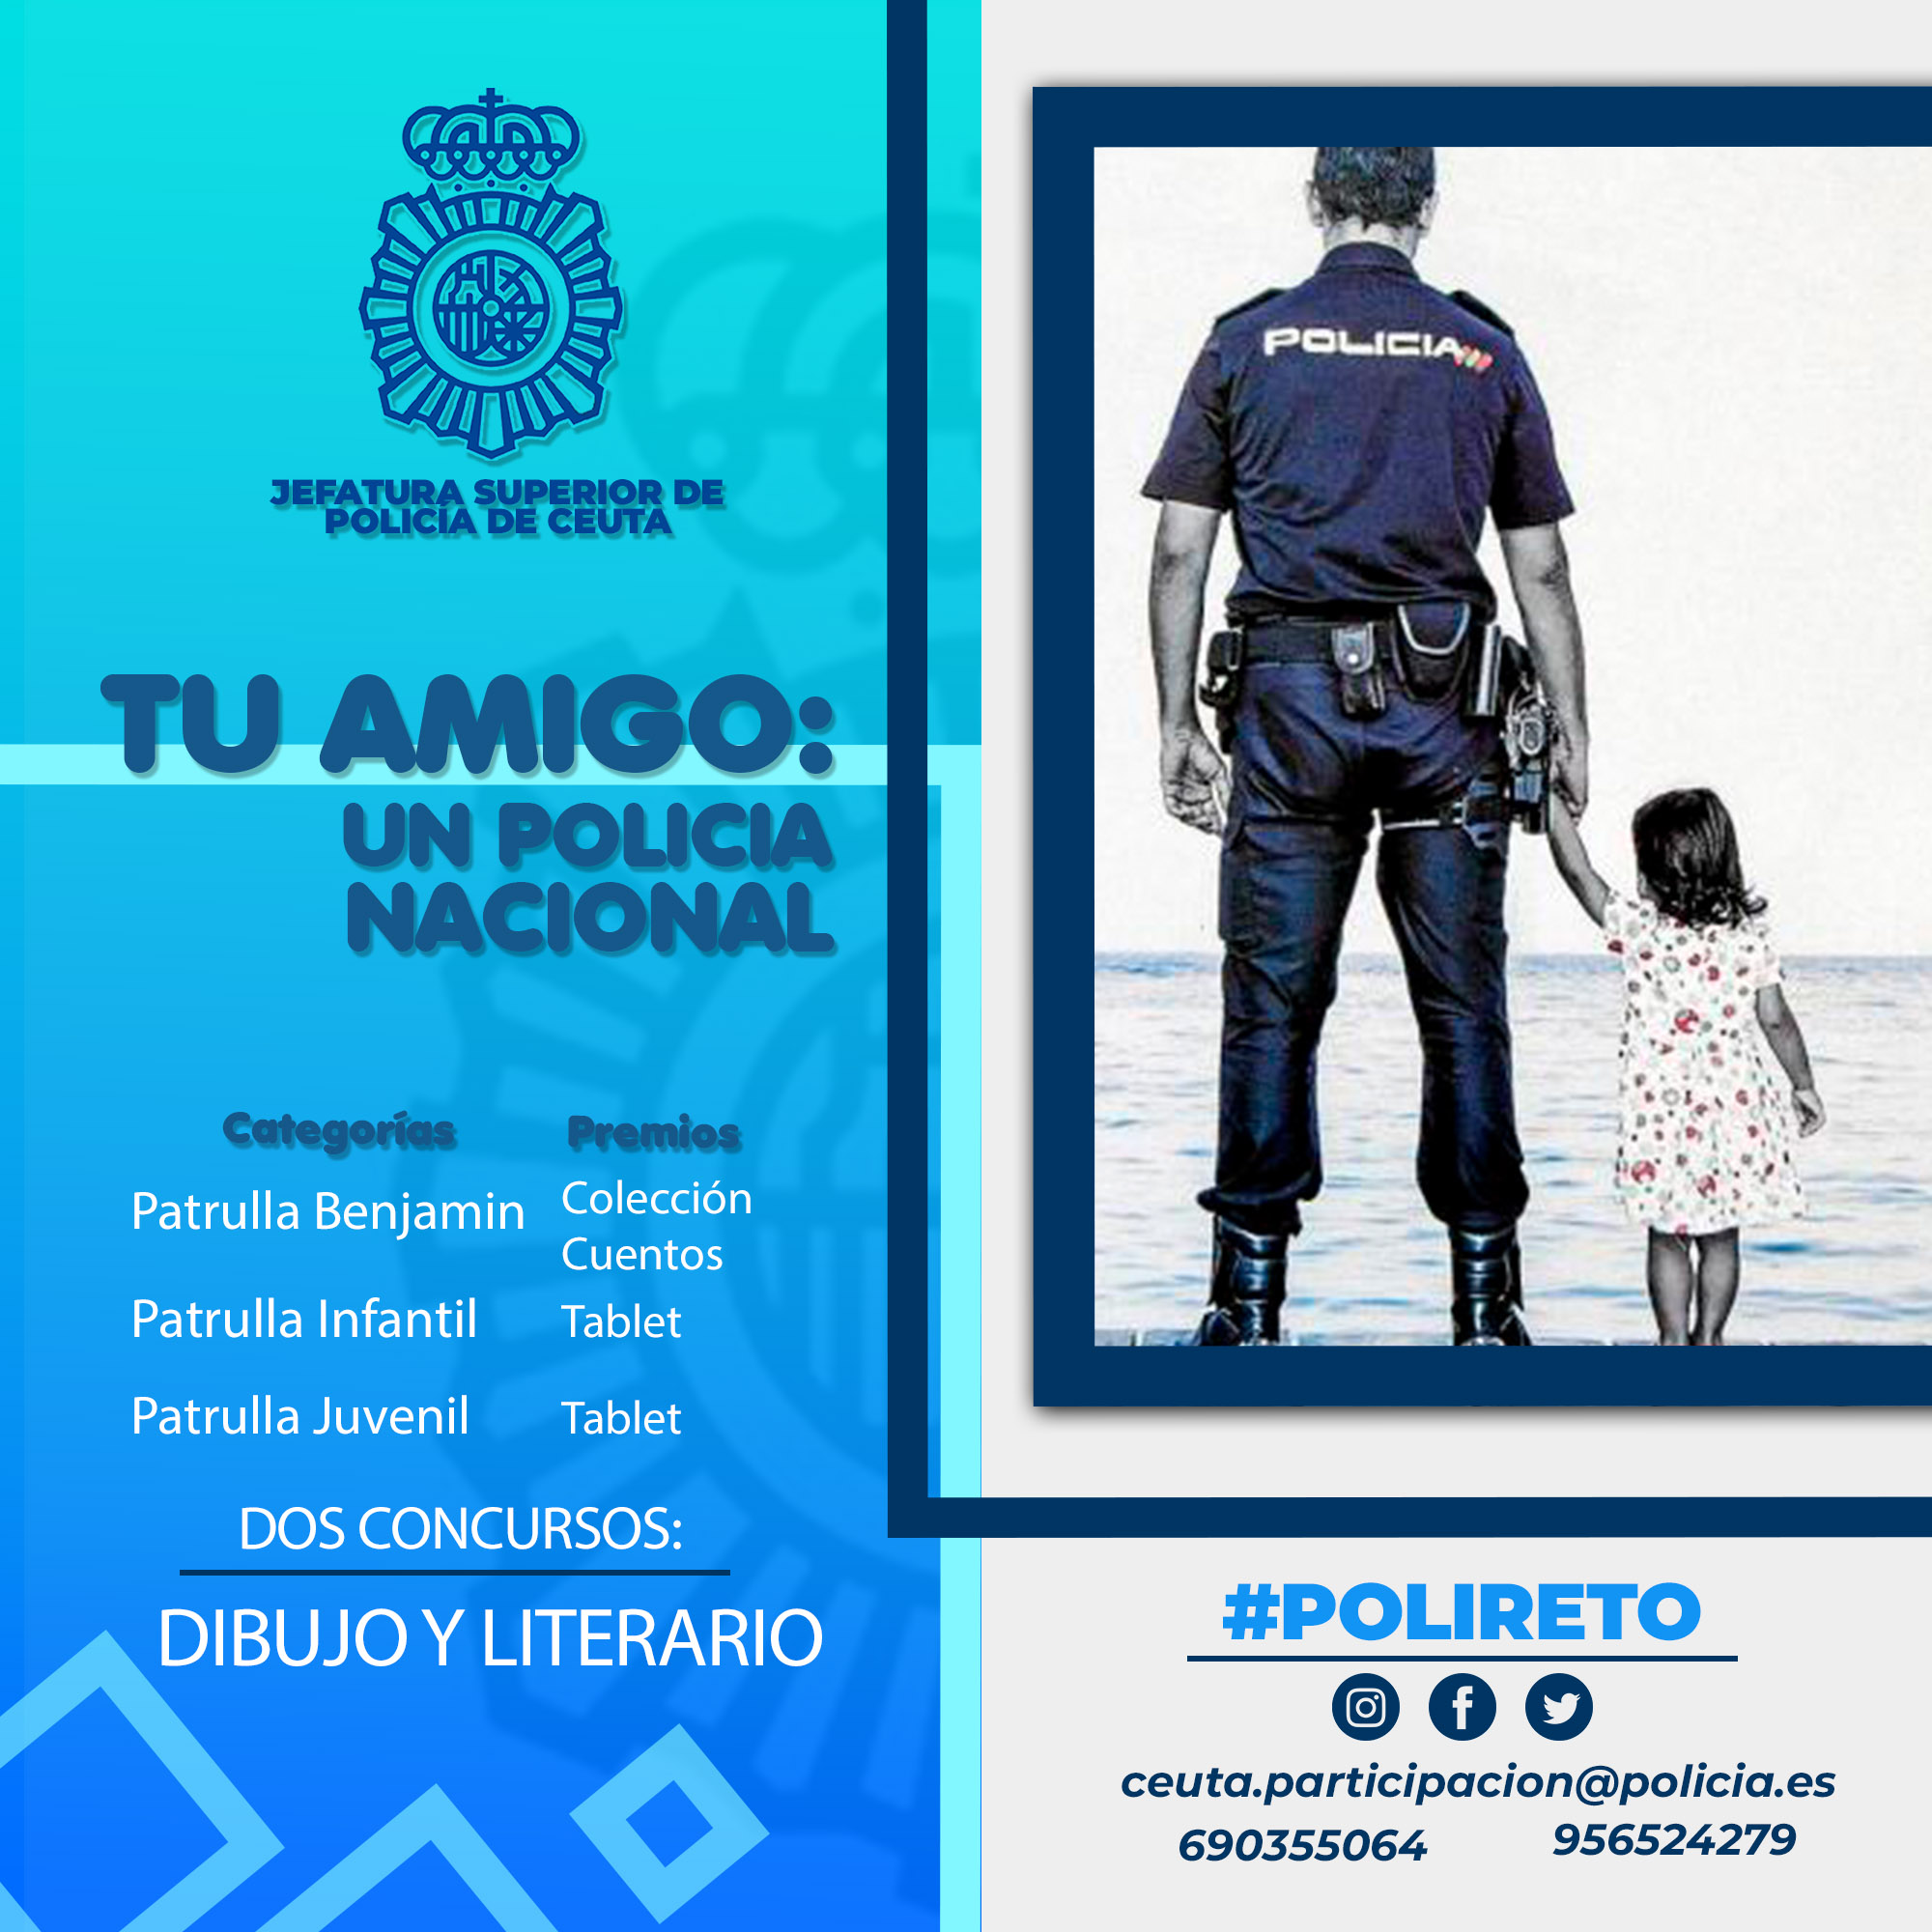 cartel-concursos-bidujo-literario-policia-nacional